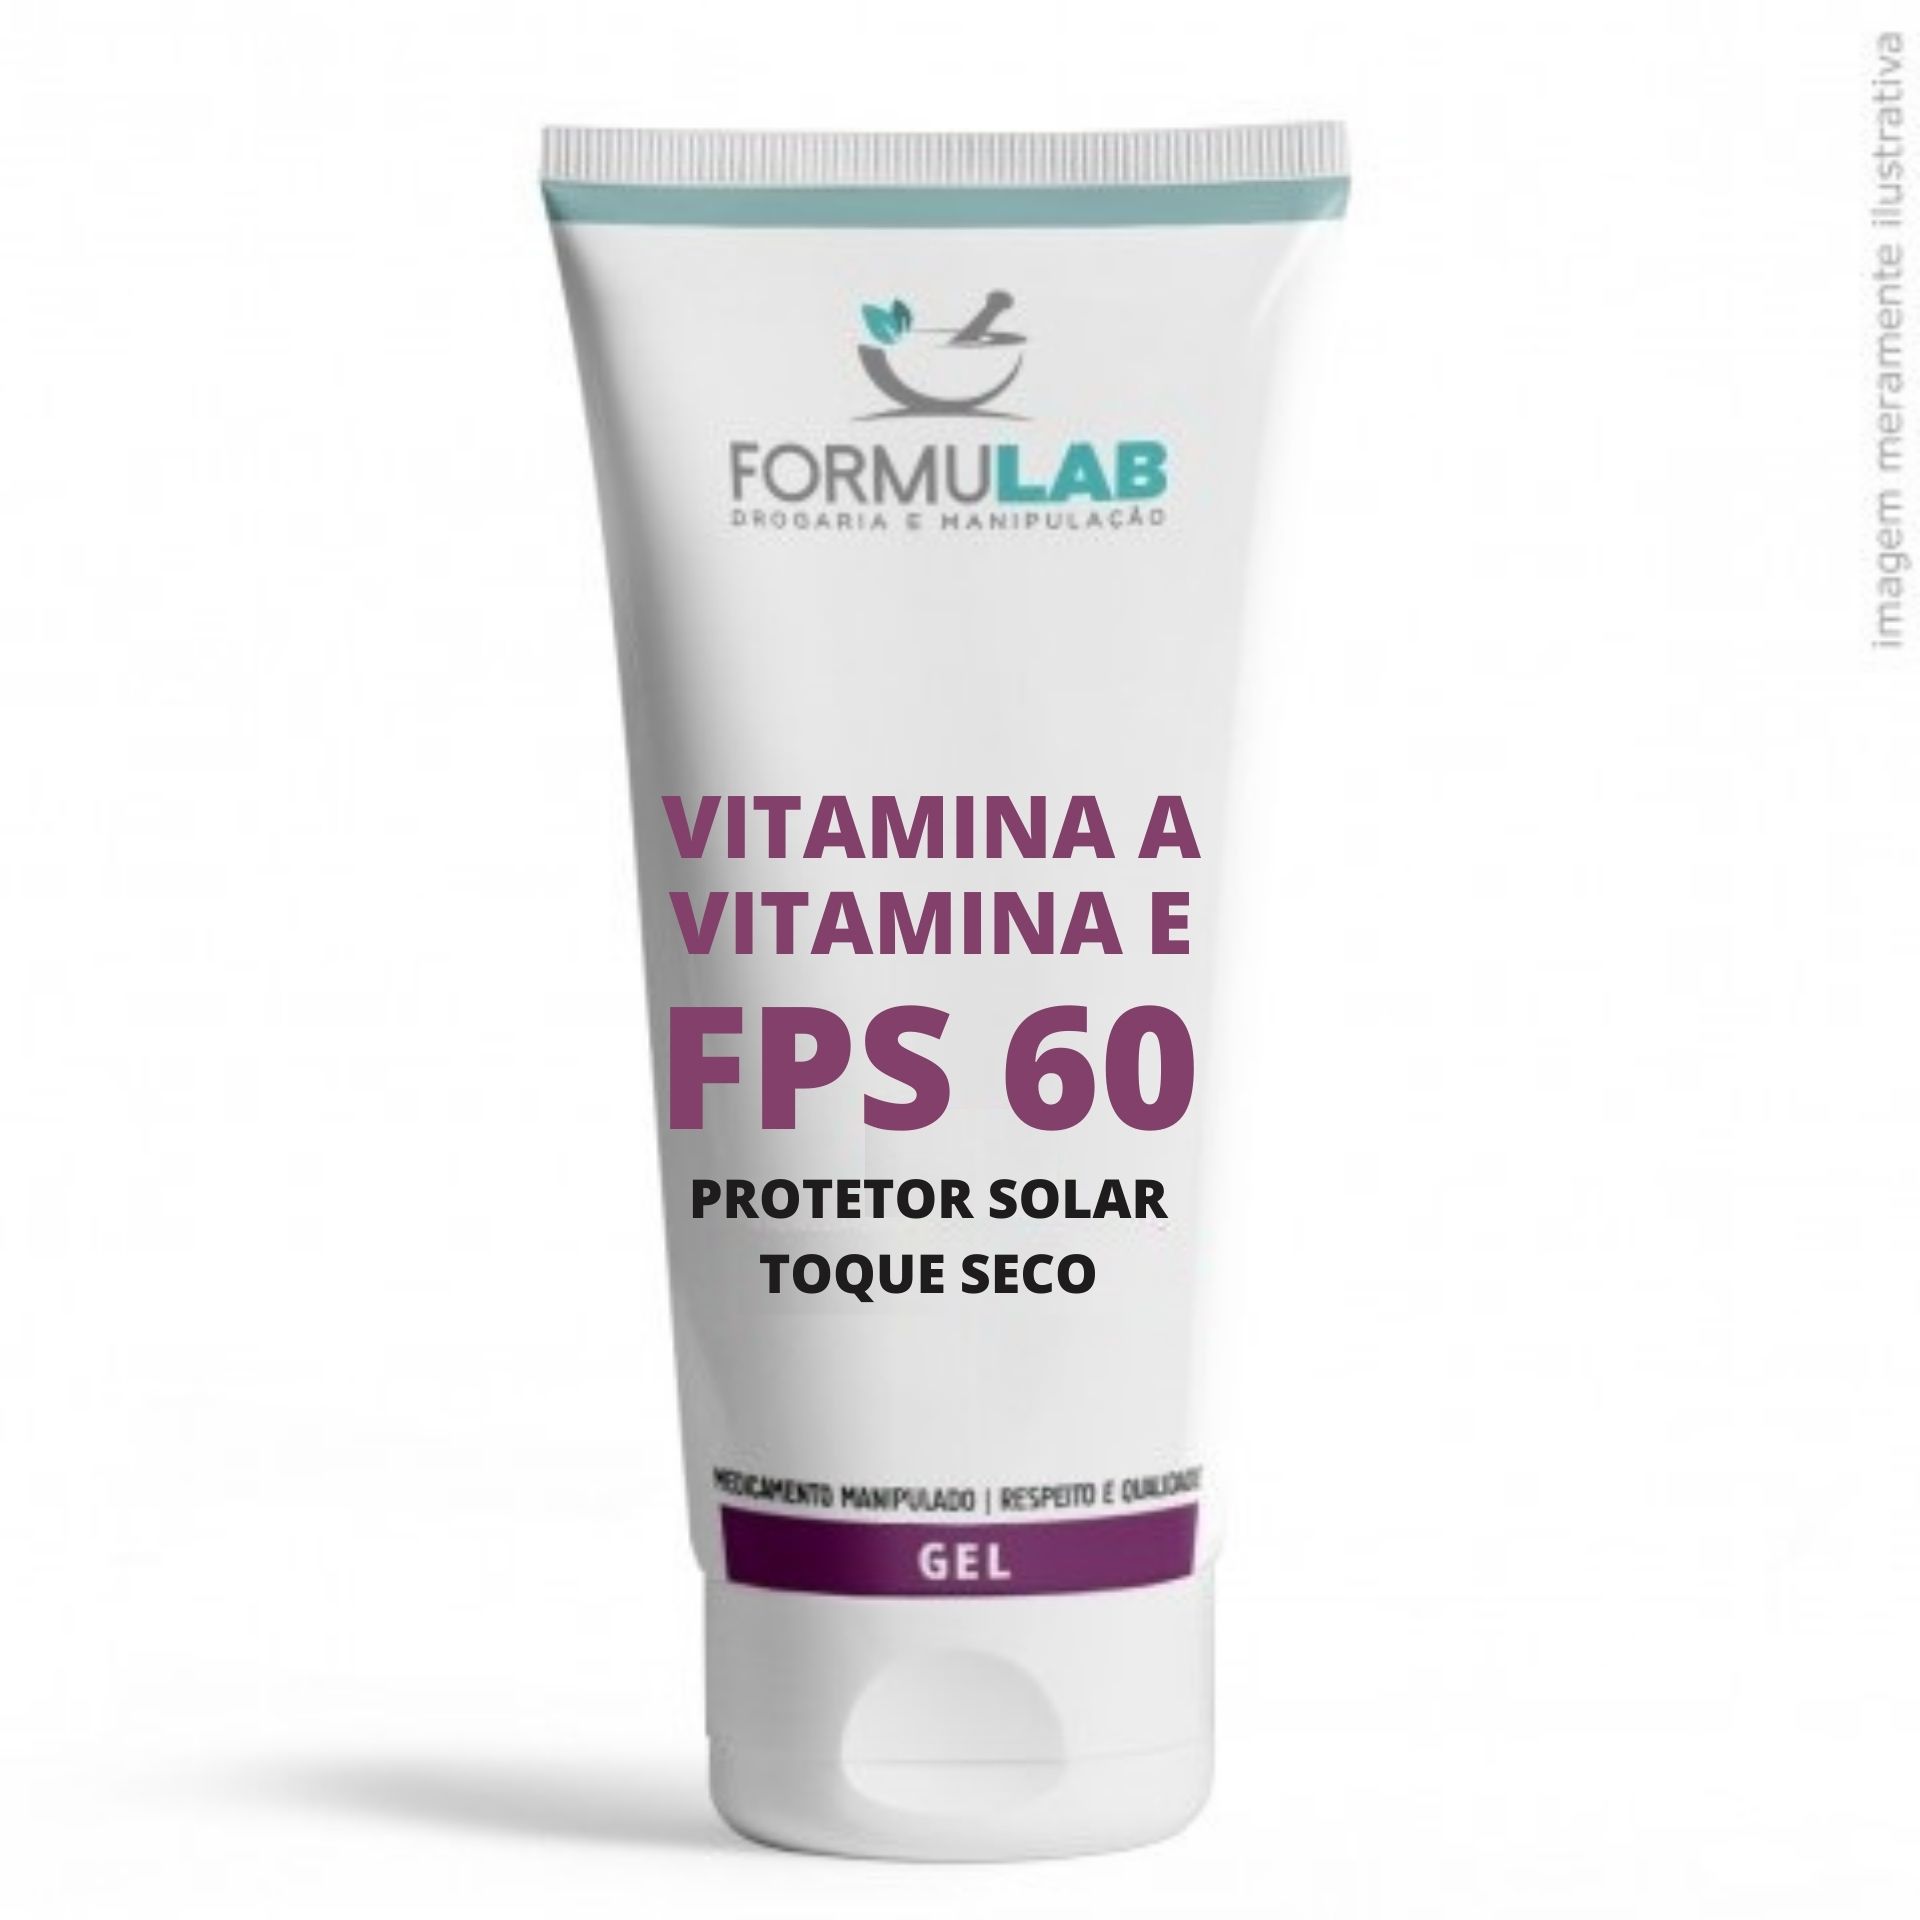 Vitamina A 1% + Vitamina E 1% + Protetor Solar FPS 60 Toque Seco - 50 Gramas